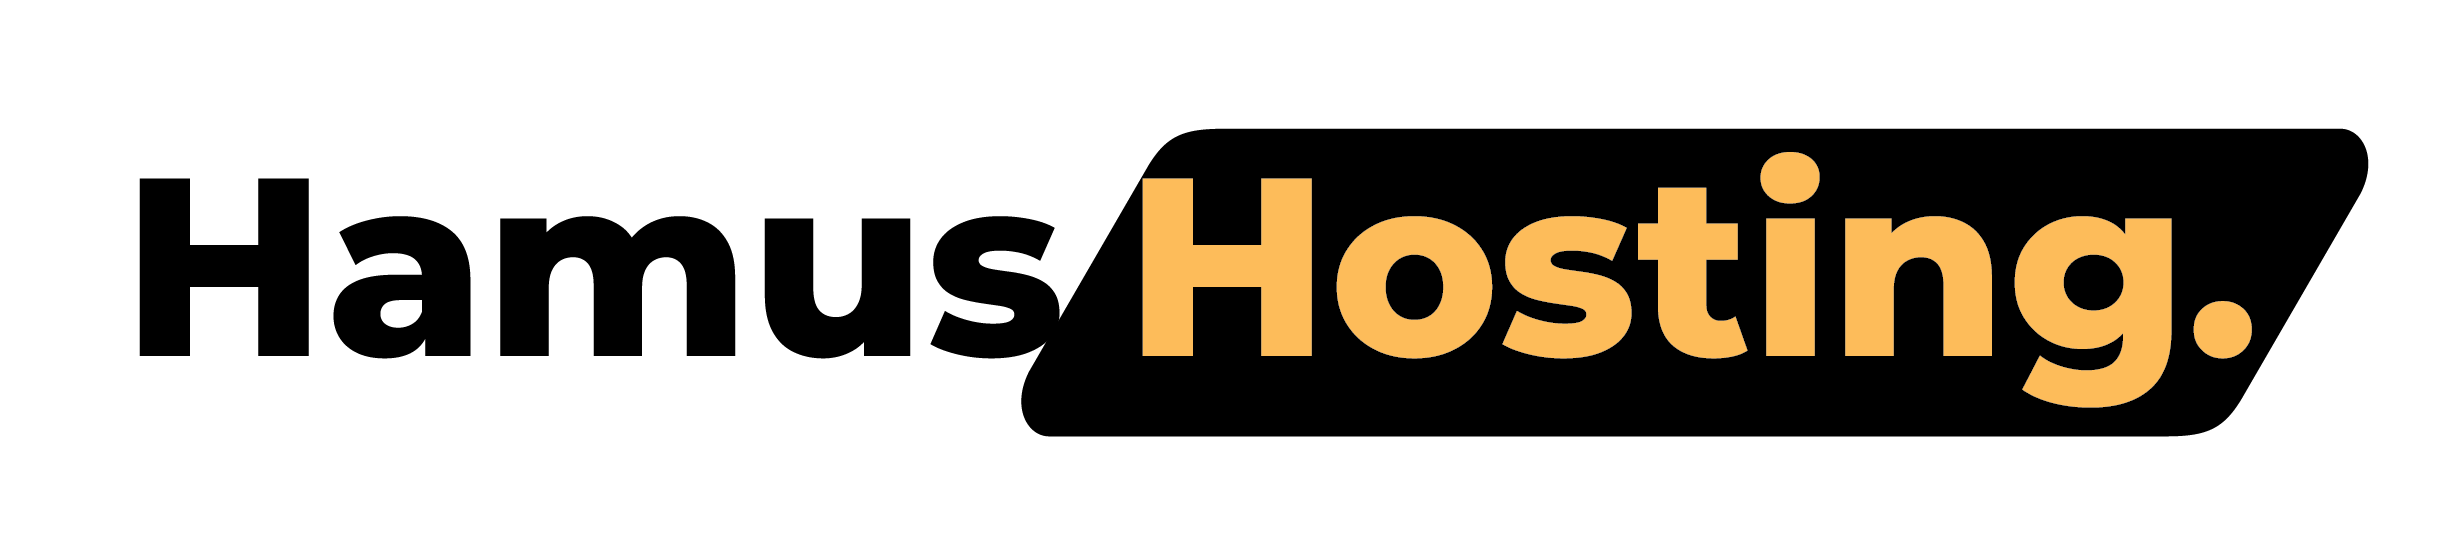 Hamus hosting logo